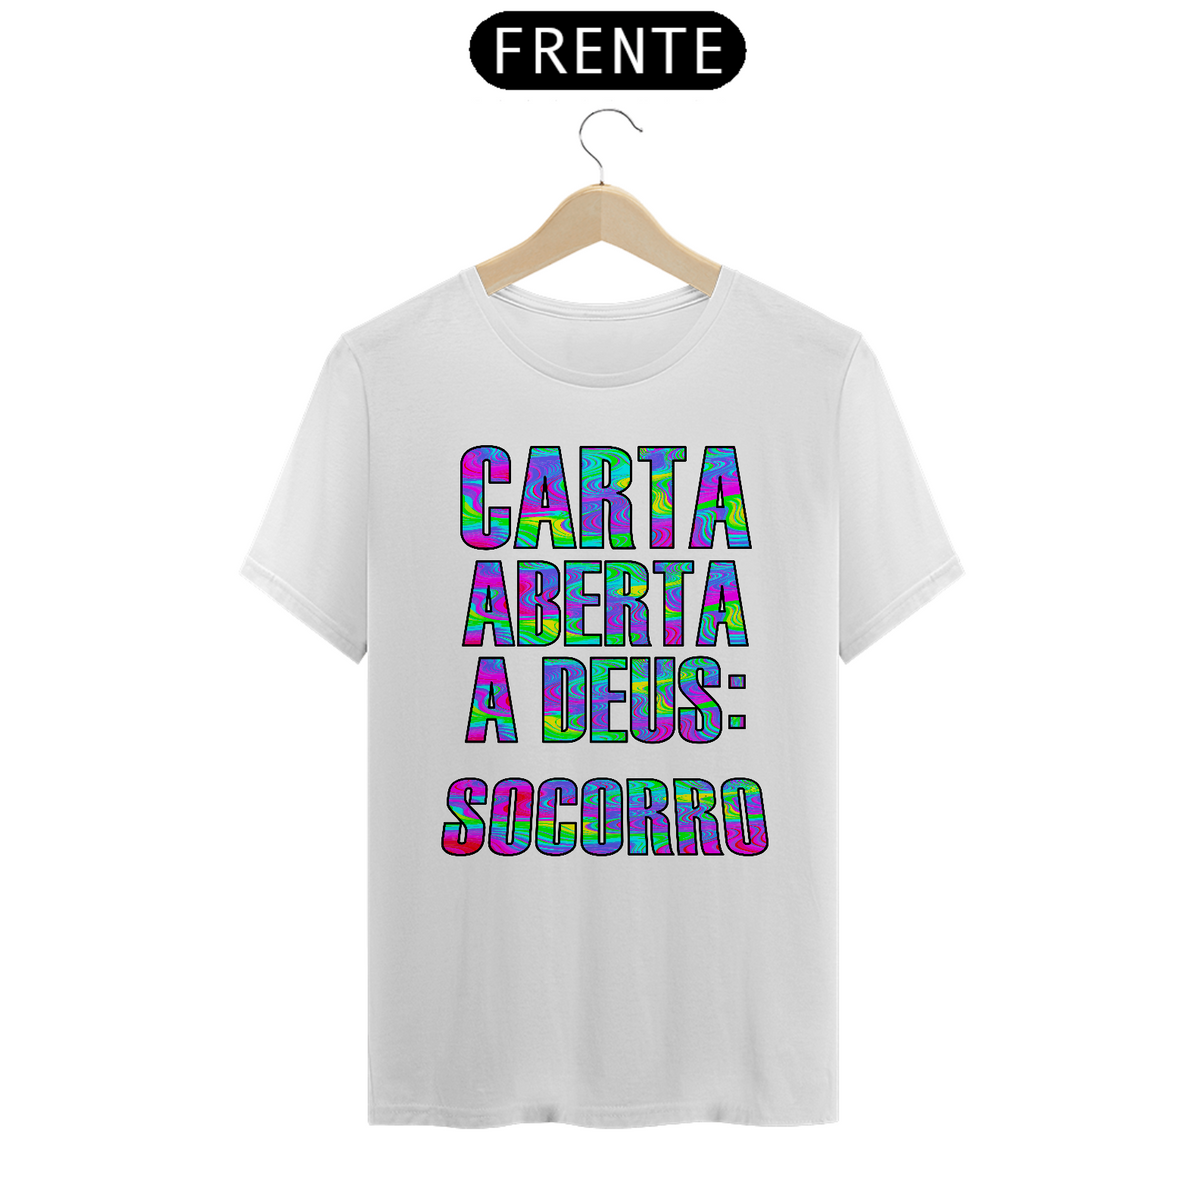 Nome do produto: Camiseta CARTA ABERTA